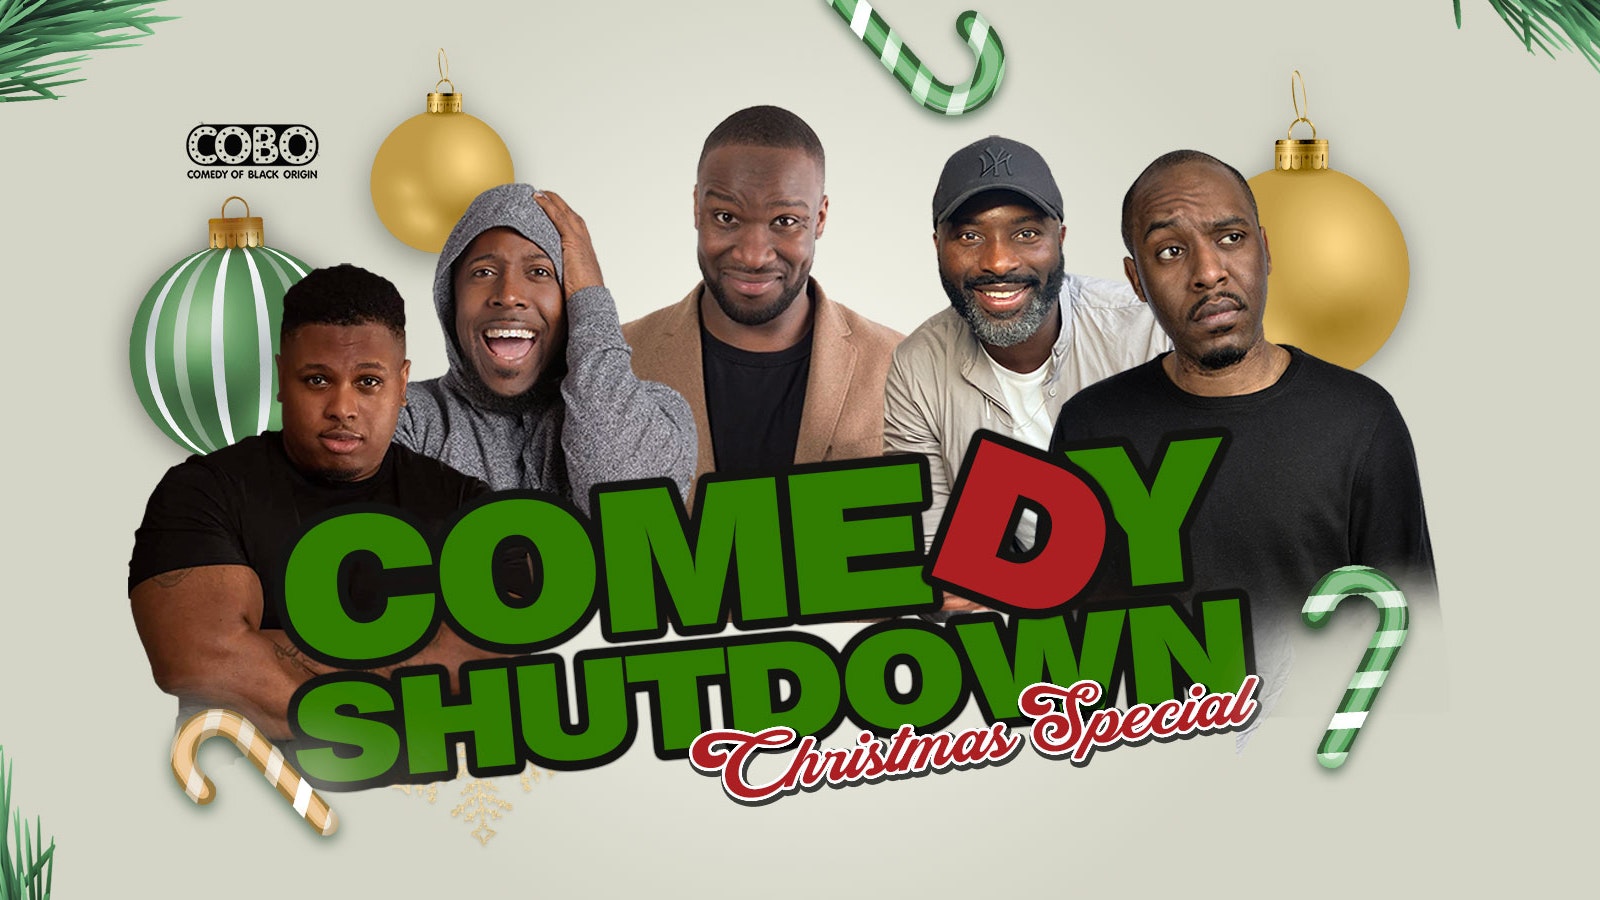 COBO : Comedy Shutdown Christmas Special – Streatham